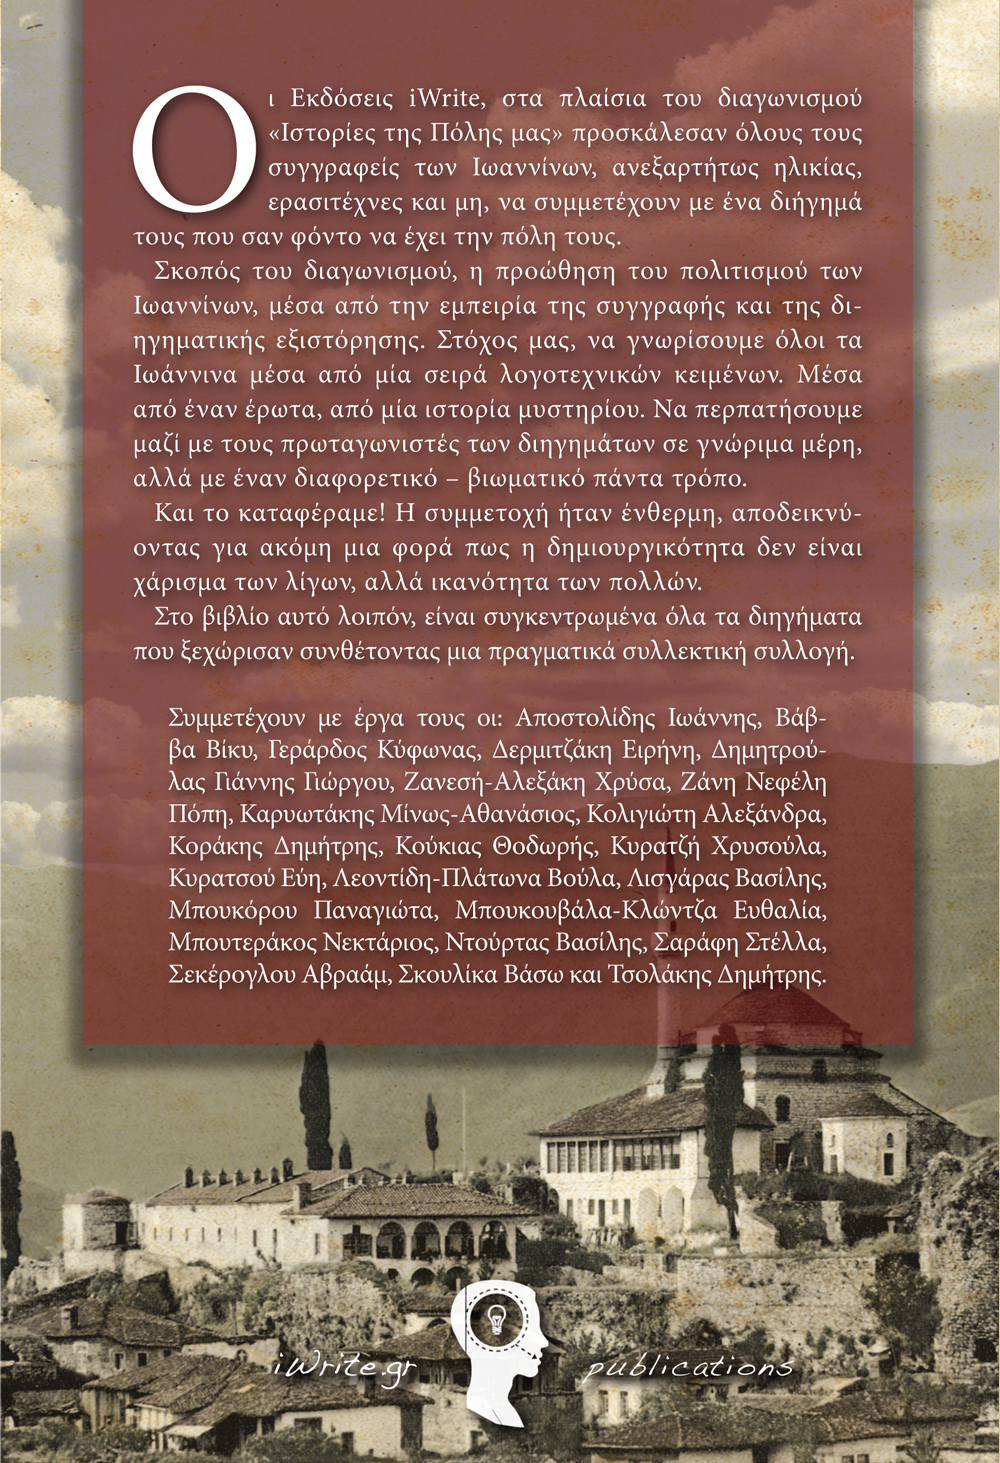 Οπισθόφυλλο, "Ιστορίες της Πόλης μας" Ιωάννινα, Εκδόσεις iWrite